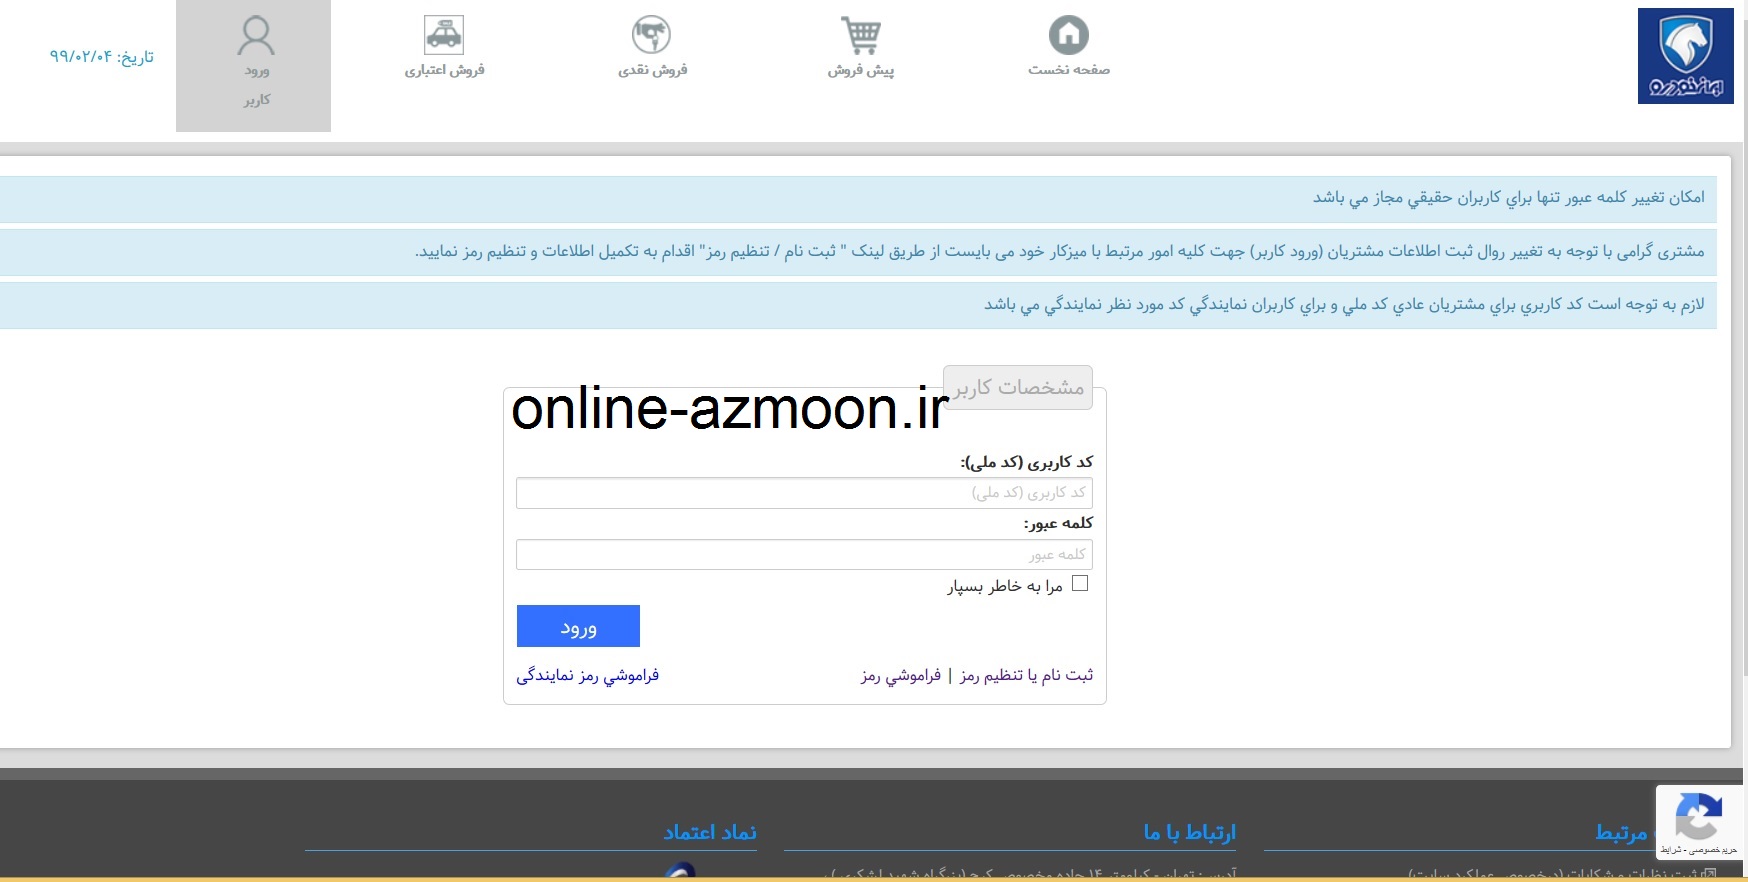 حساب کاربری در سایت ایرانخودرو